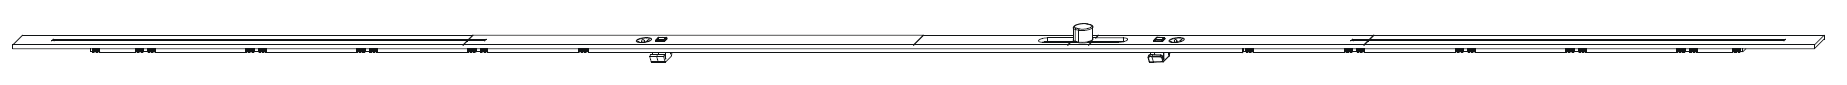 MAICO -  Prolunga BILICO bilico orizzontale per cremonese - dimensioni 1750 - hbb 1251 - 1750 - lbb 1251 - 1750